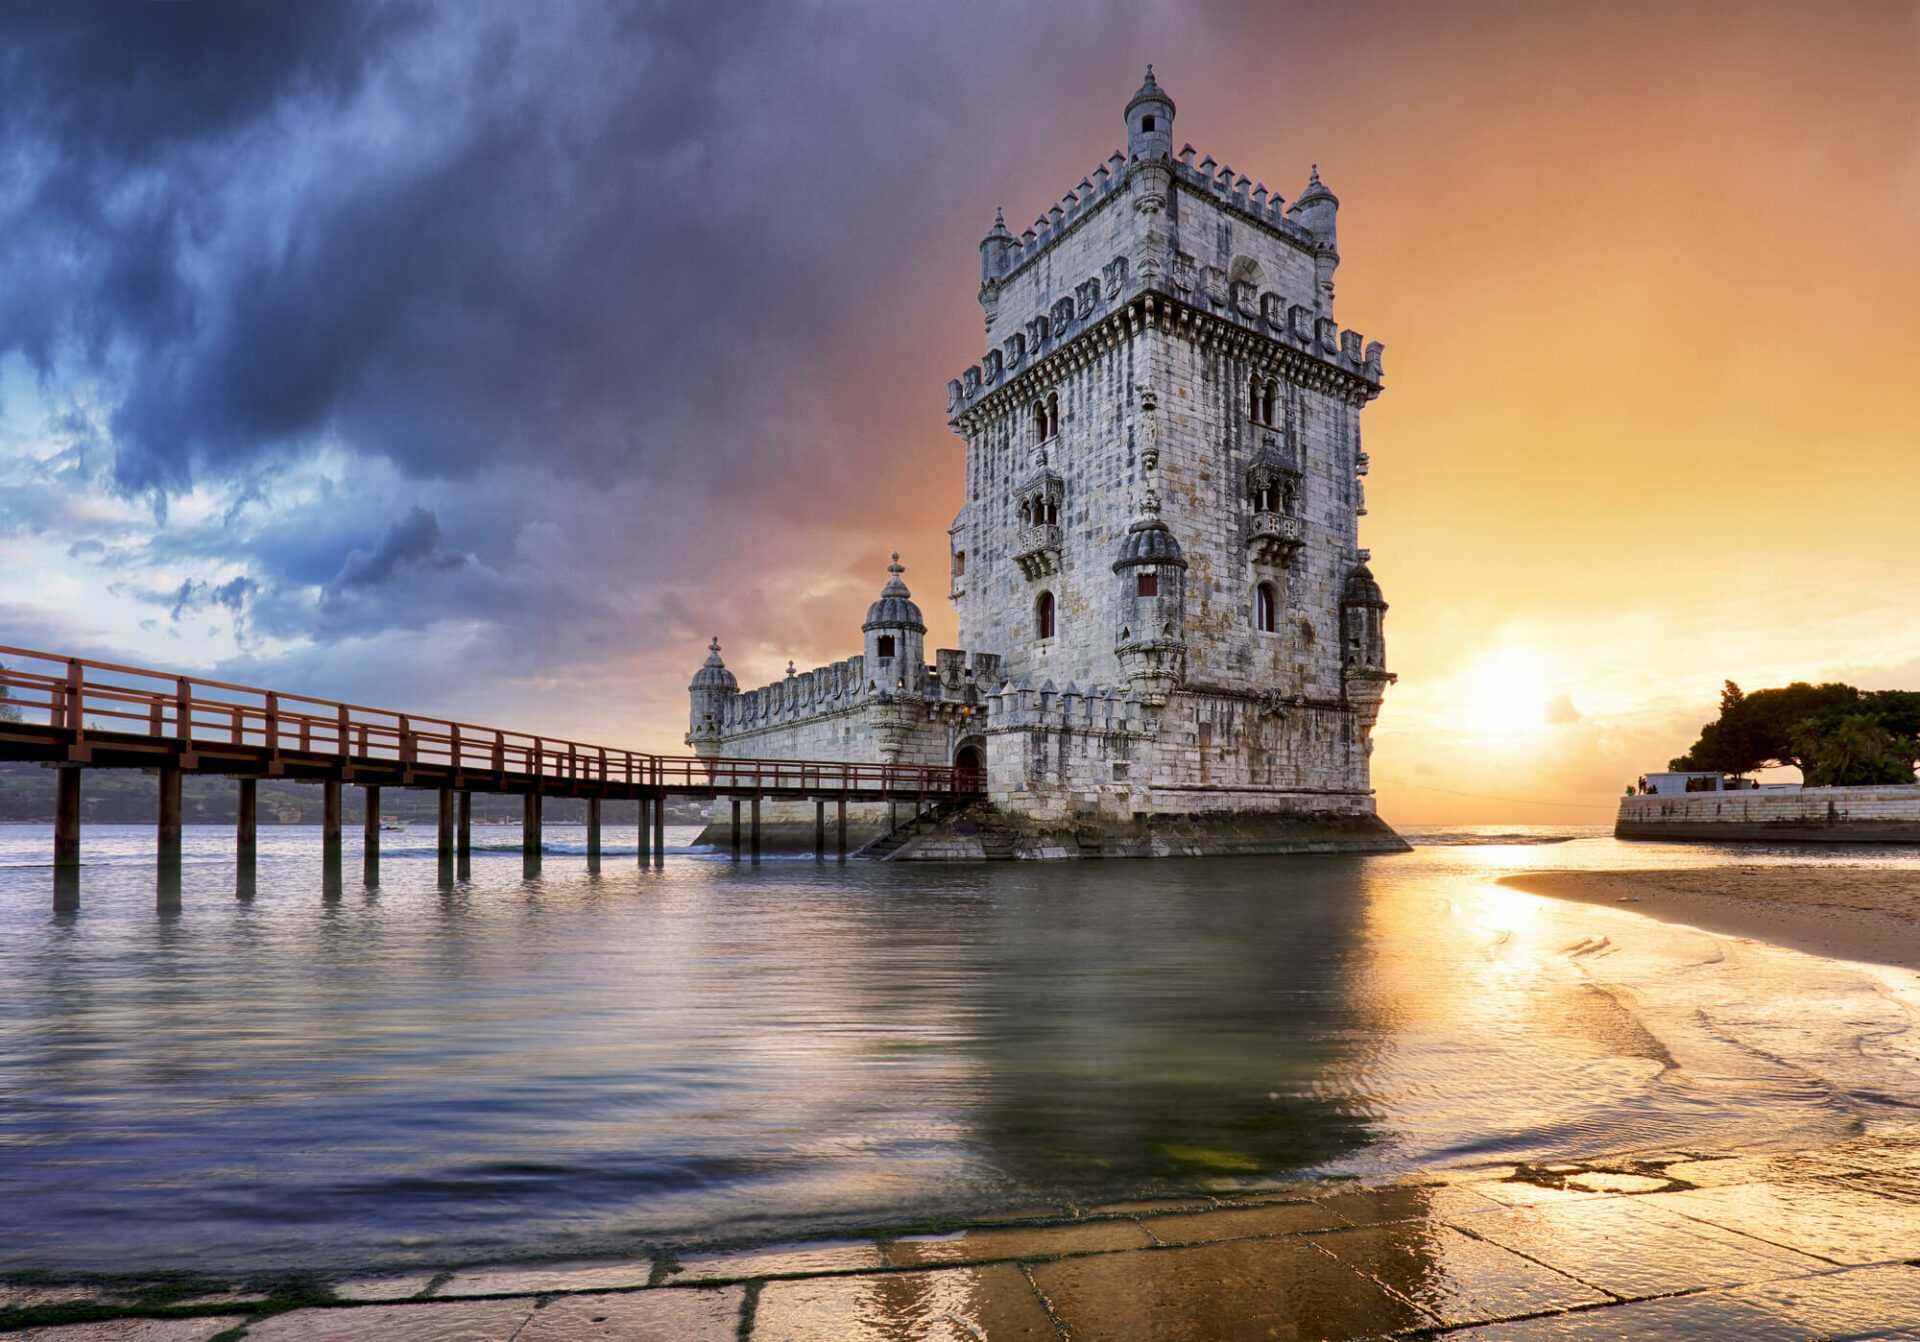 מגדל בלם (בלן) ליסבון - המדריך השלם לביקור במגדל המפורסם של ליסבון!